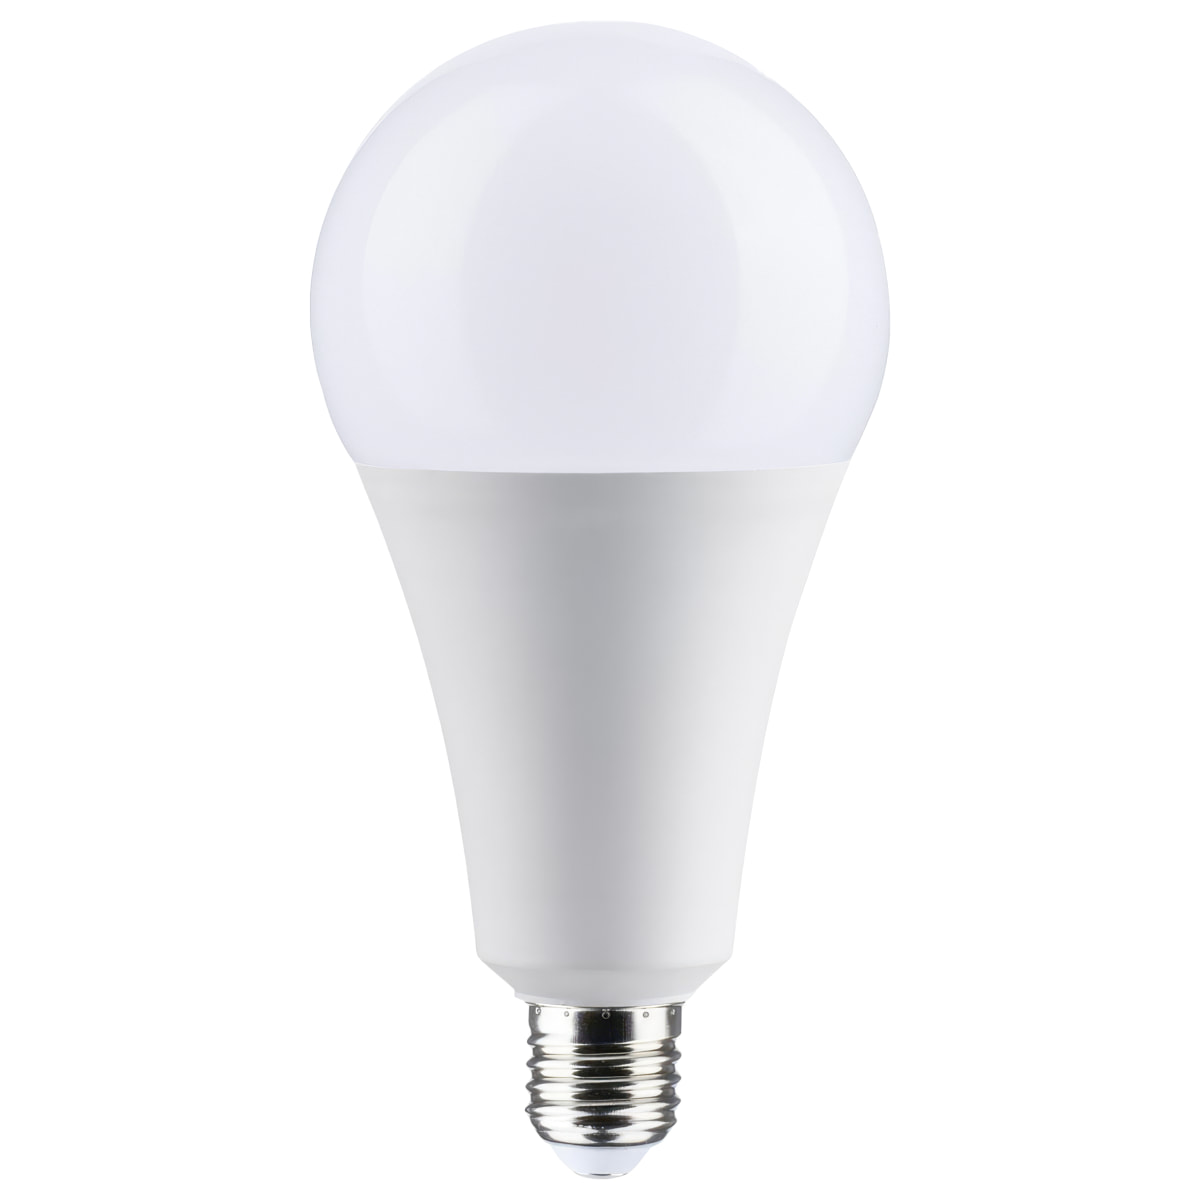 A25 Style Light Bulb